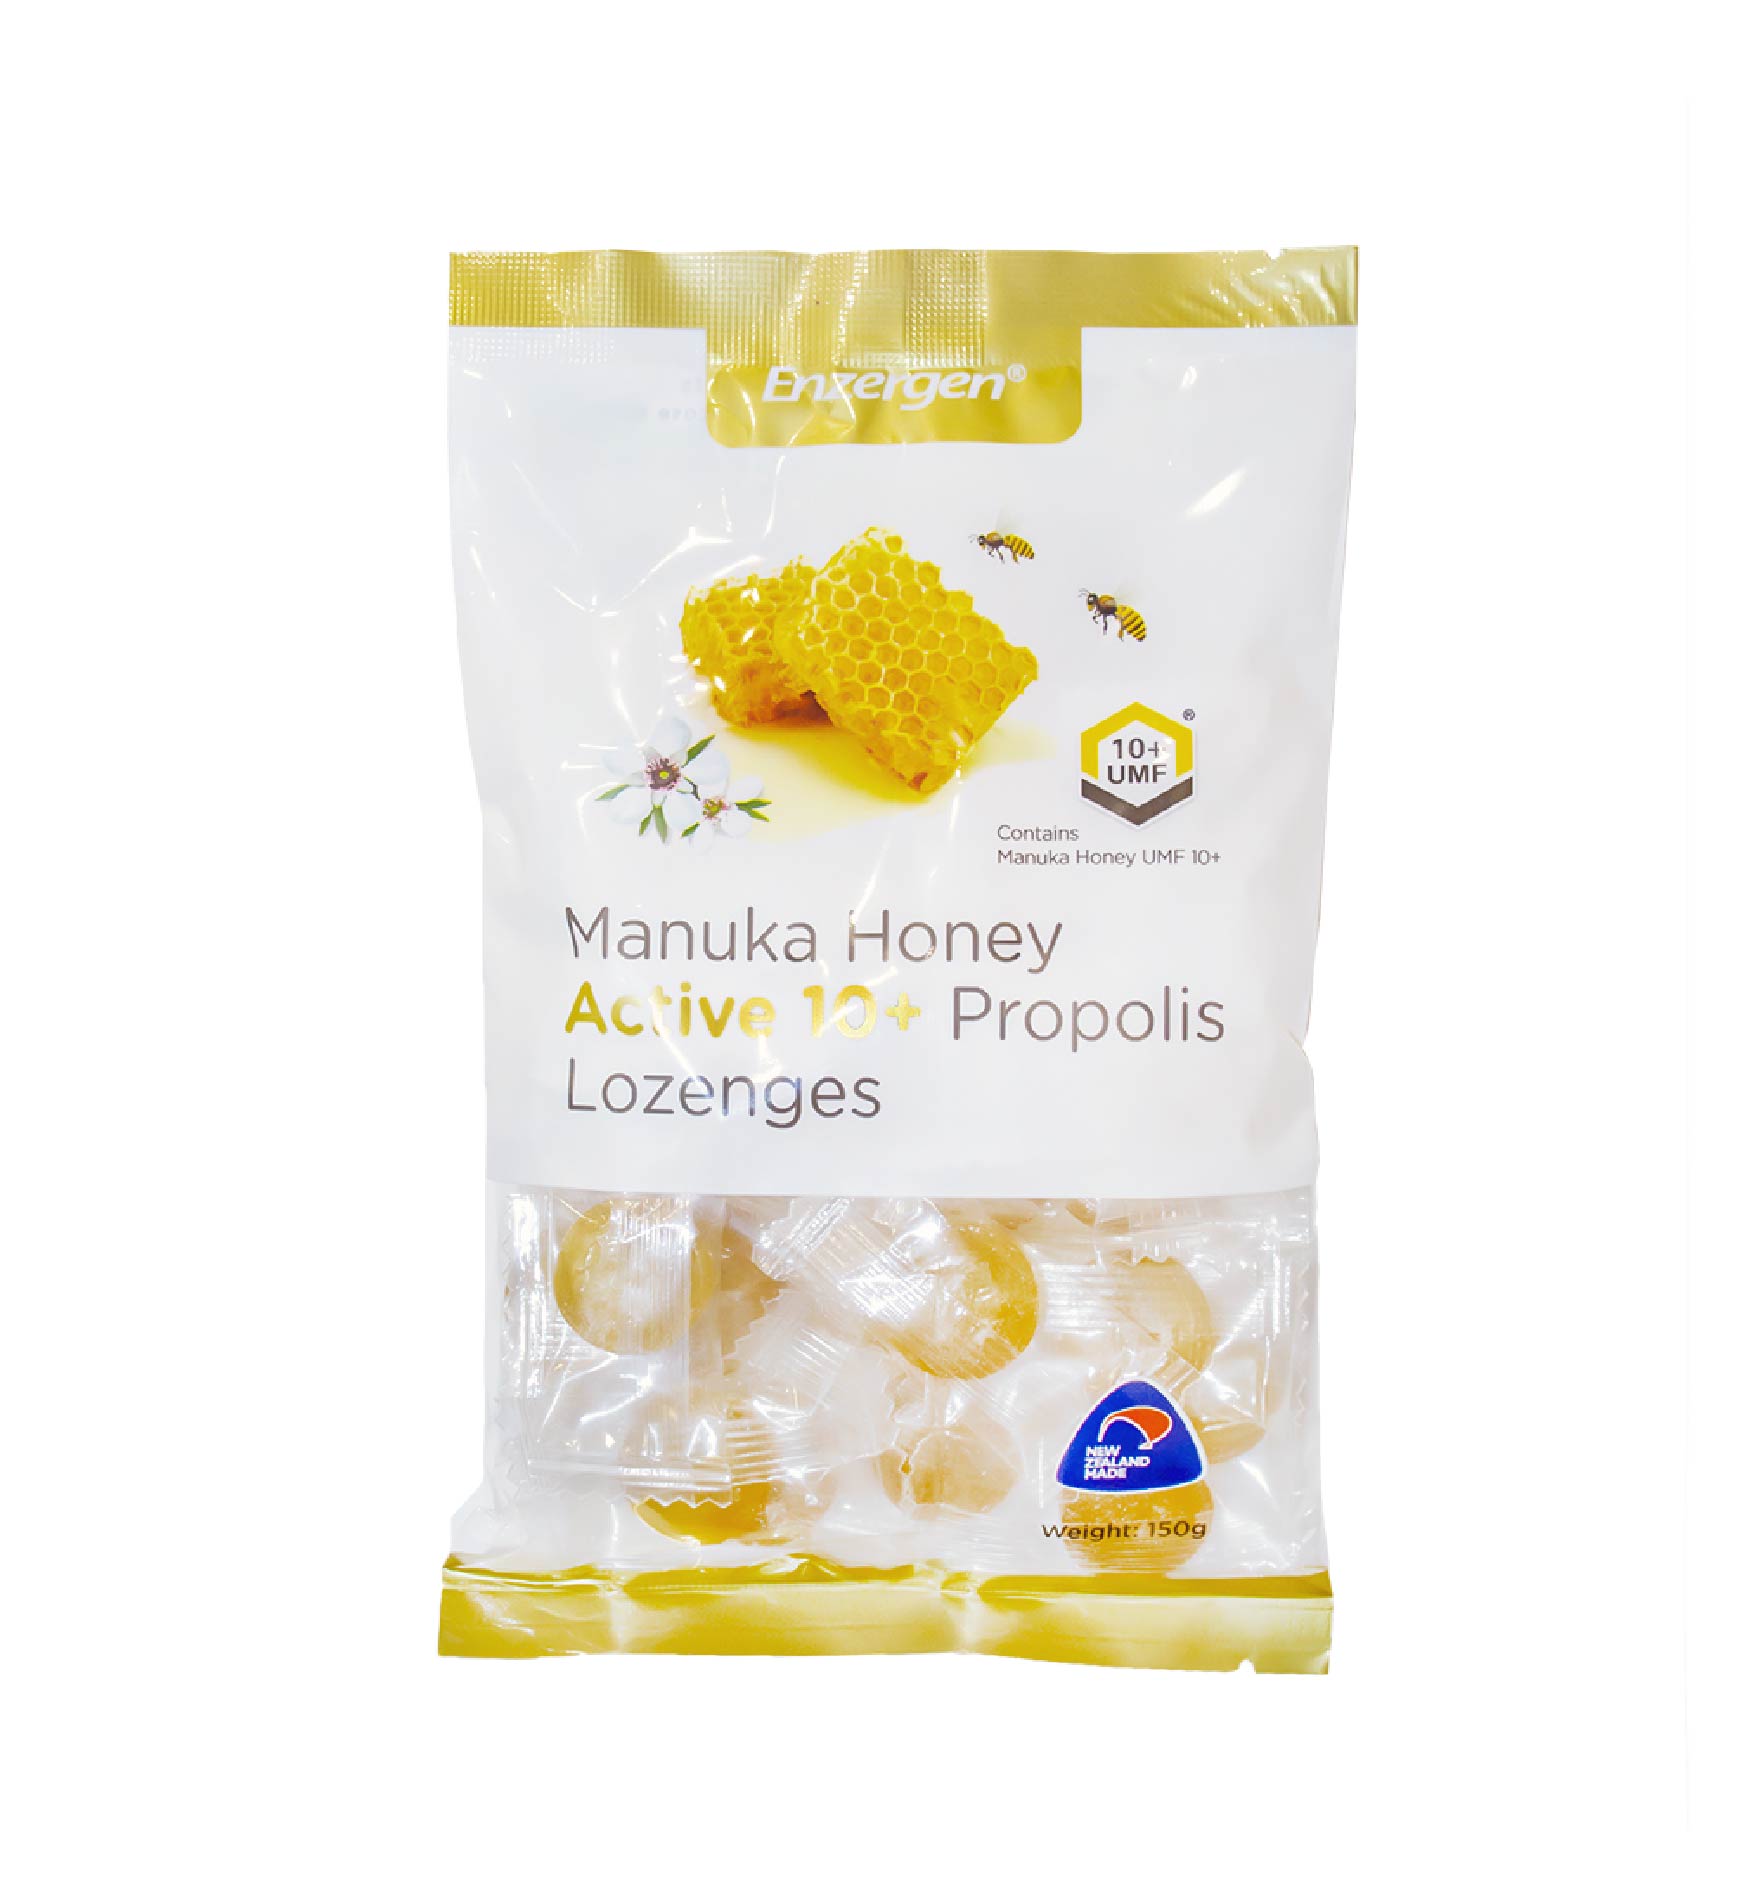 Manuka Honey Active 10+ Propolis Lozenges - KiwiCorp